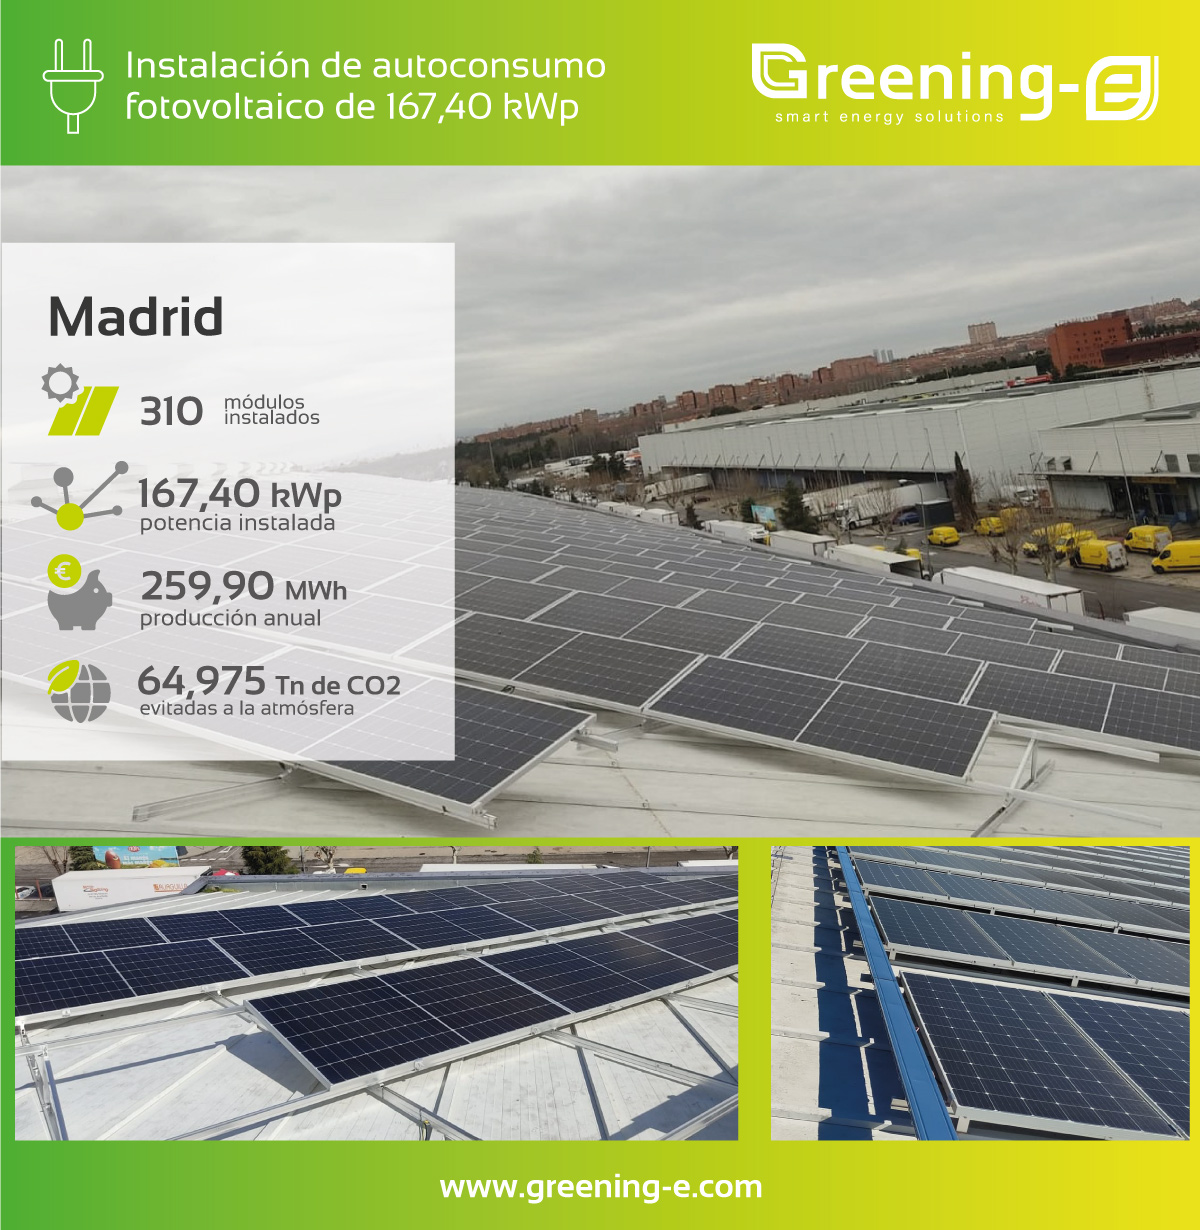 Proyectos Greening-e Instalación de autoconsumo de 167,40 kWp en Madrid